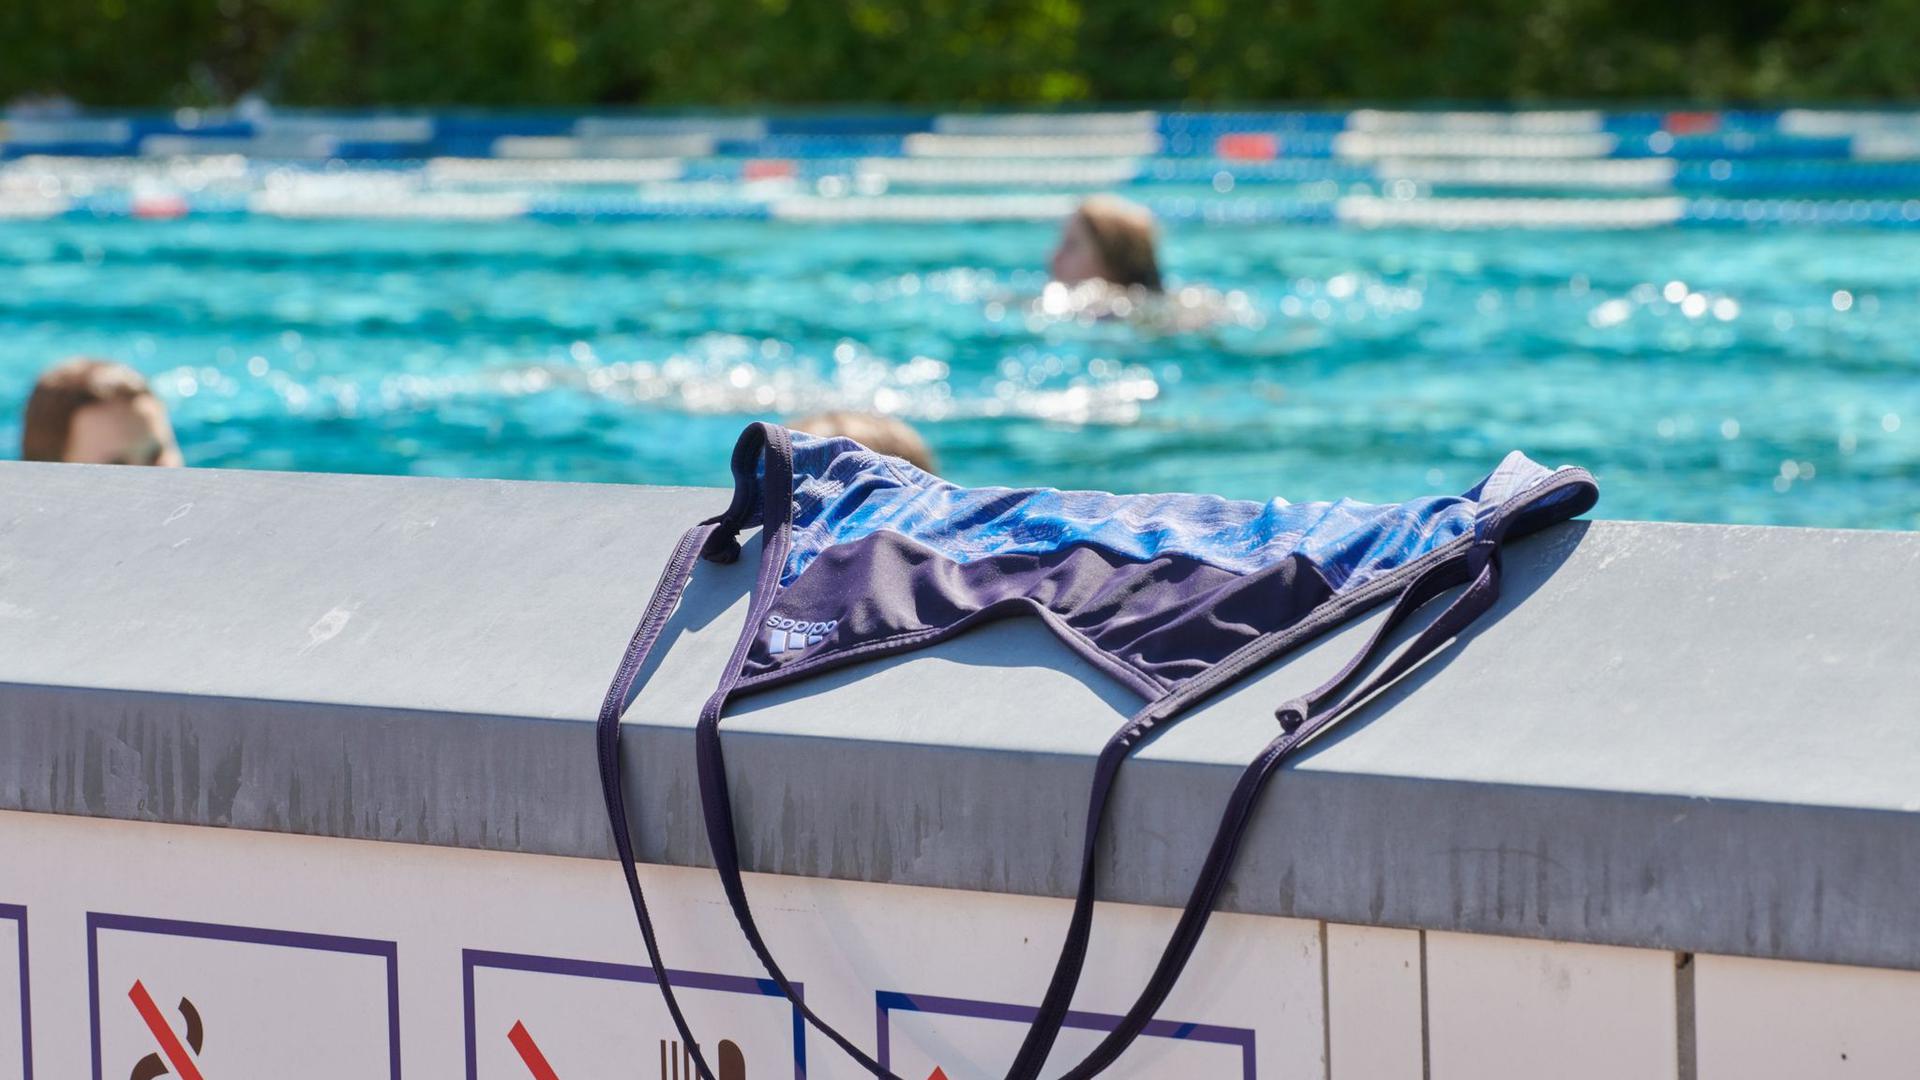 Oben rum frei dürfen sich im Schwimmbad bisher meist nur Männer zeigen. In Göttingen soll sich das ab Anfang Mai ändern. Dabei geht es den Oben-ohne-Befürwortern um mehr als dem Spaß am Nacktbaden.